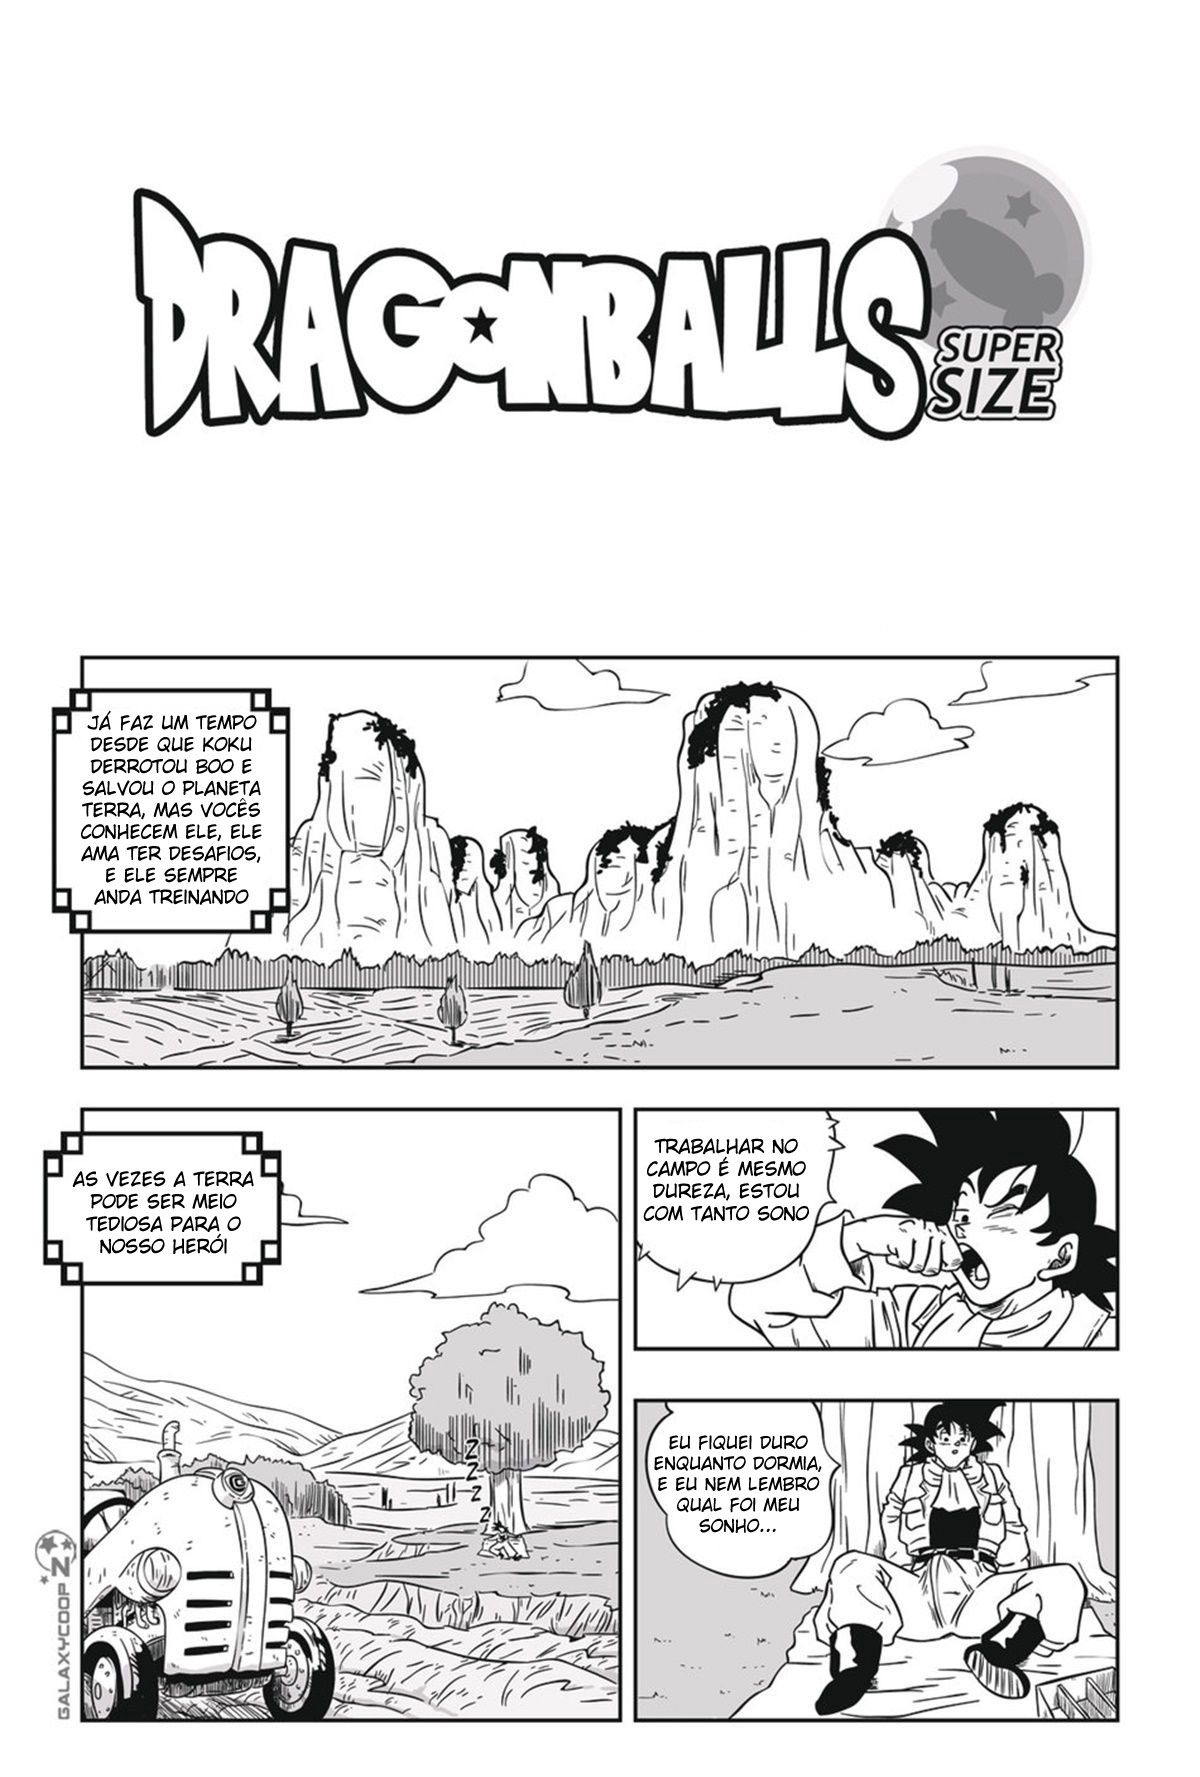 DragonBalls Super Size Capítulo 1